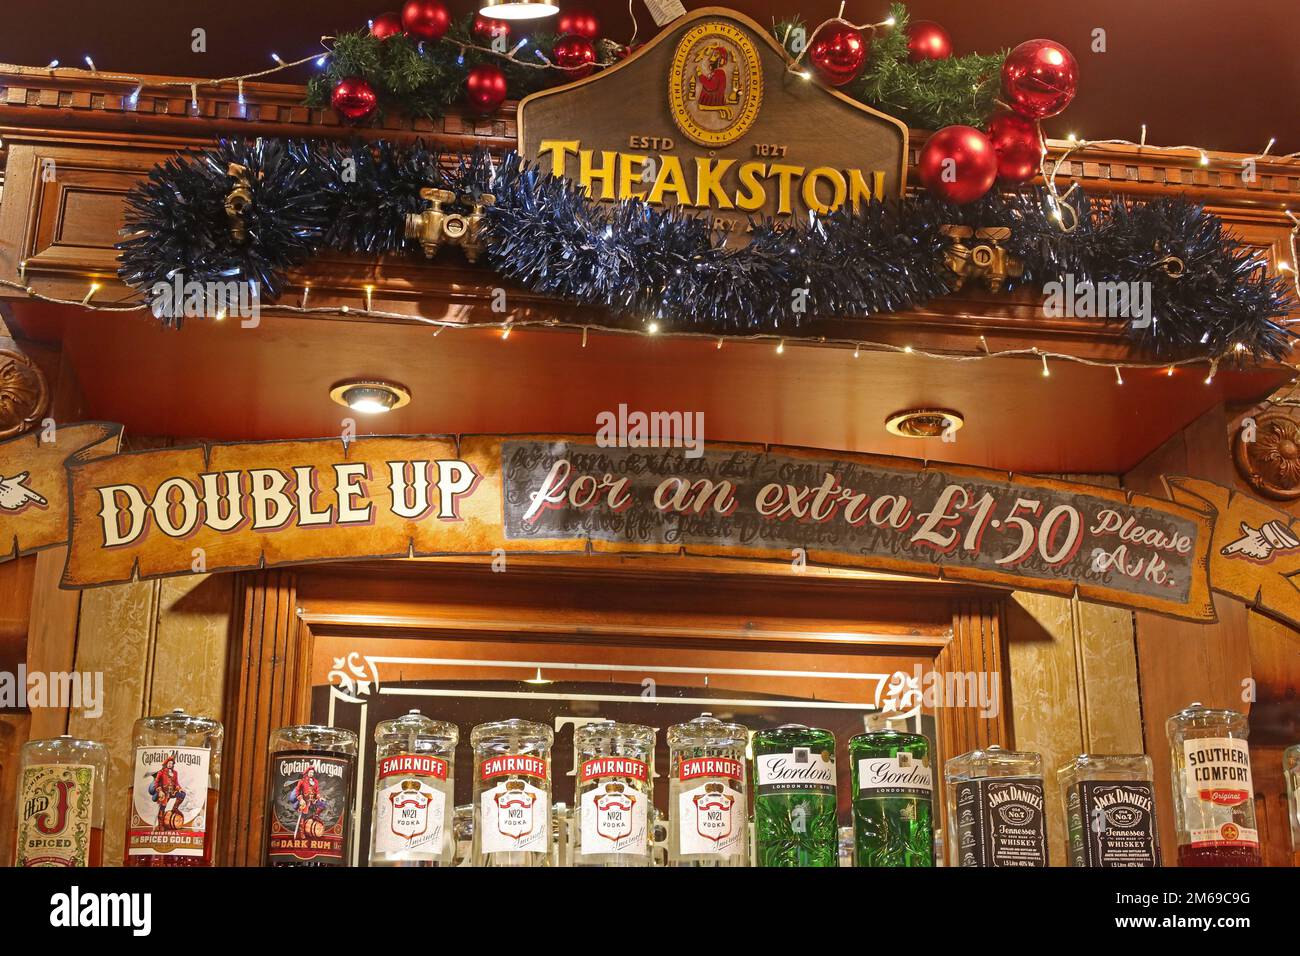 Panneau suggérant des buveurs de Noël, devrait doubler les spiritueux, pour seulement un supplément de £1,50, dans un pub Theakston à Manchester, Angleterre, Royaume-Uni, M1 5NE Banque D'Images